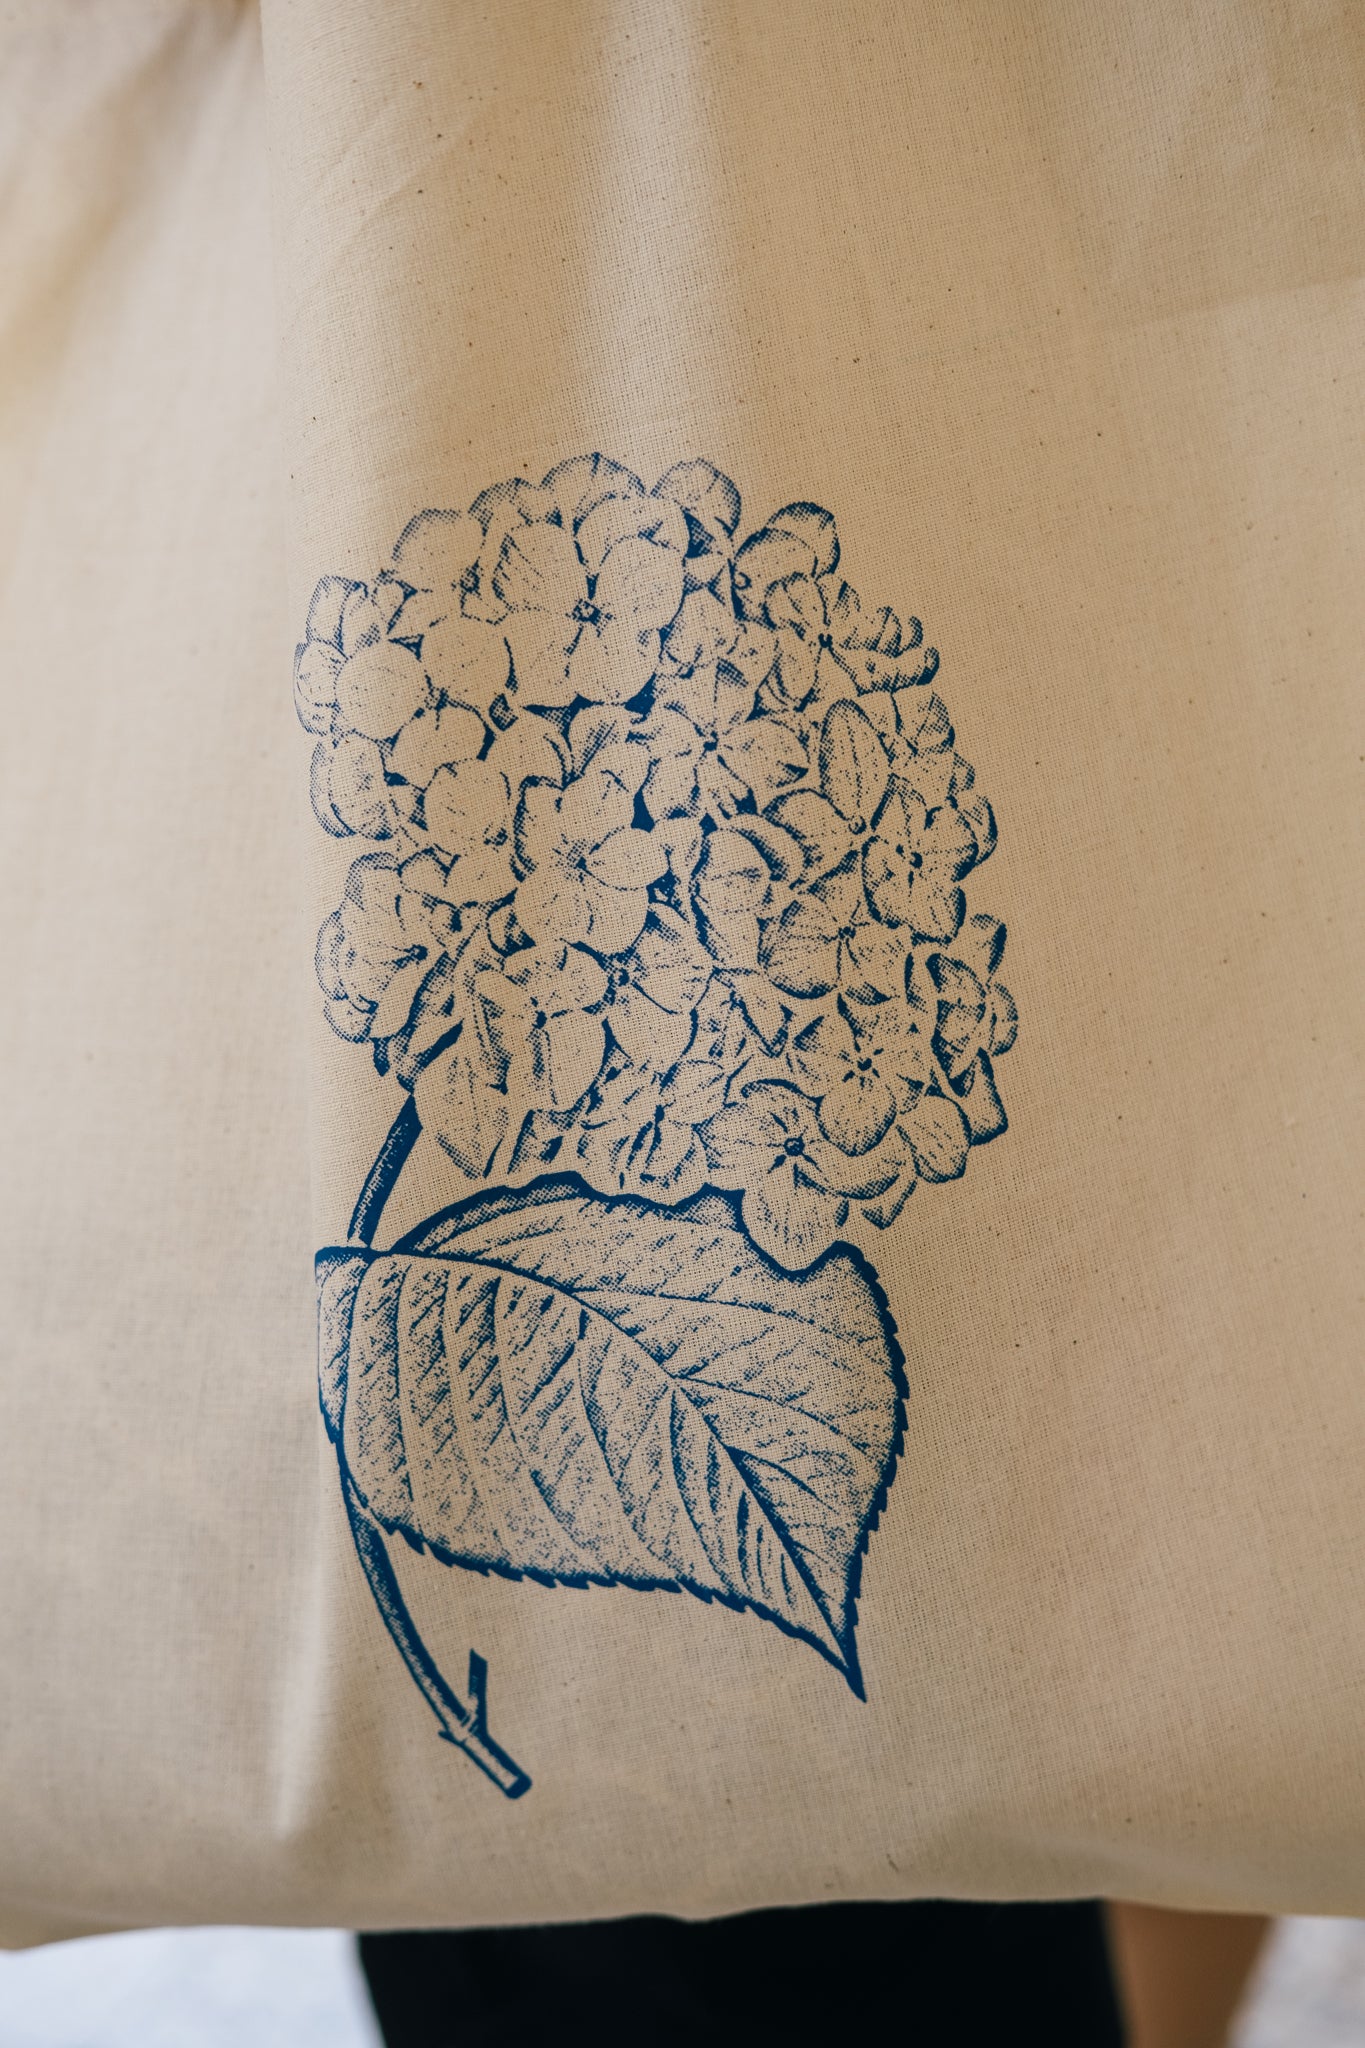 Flower Print Tote Bags